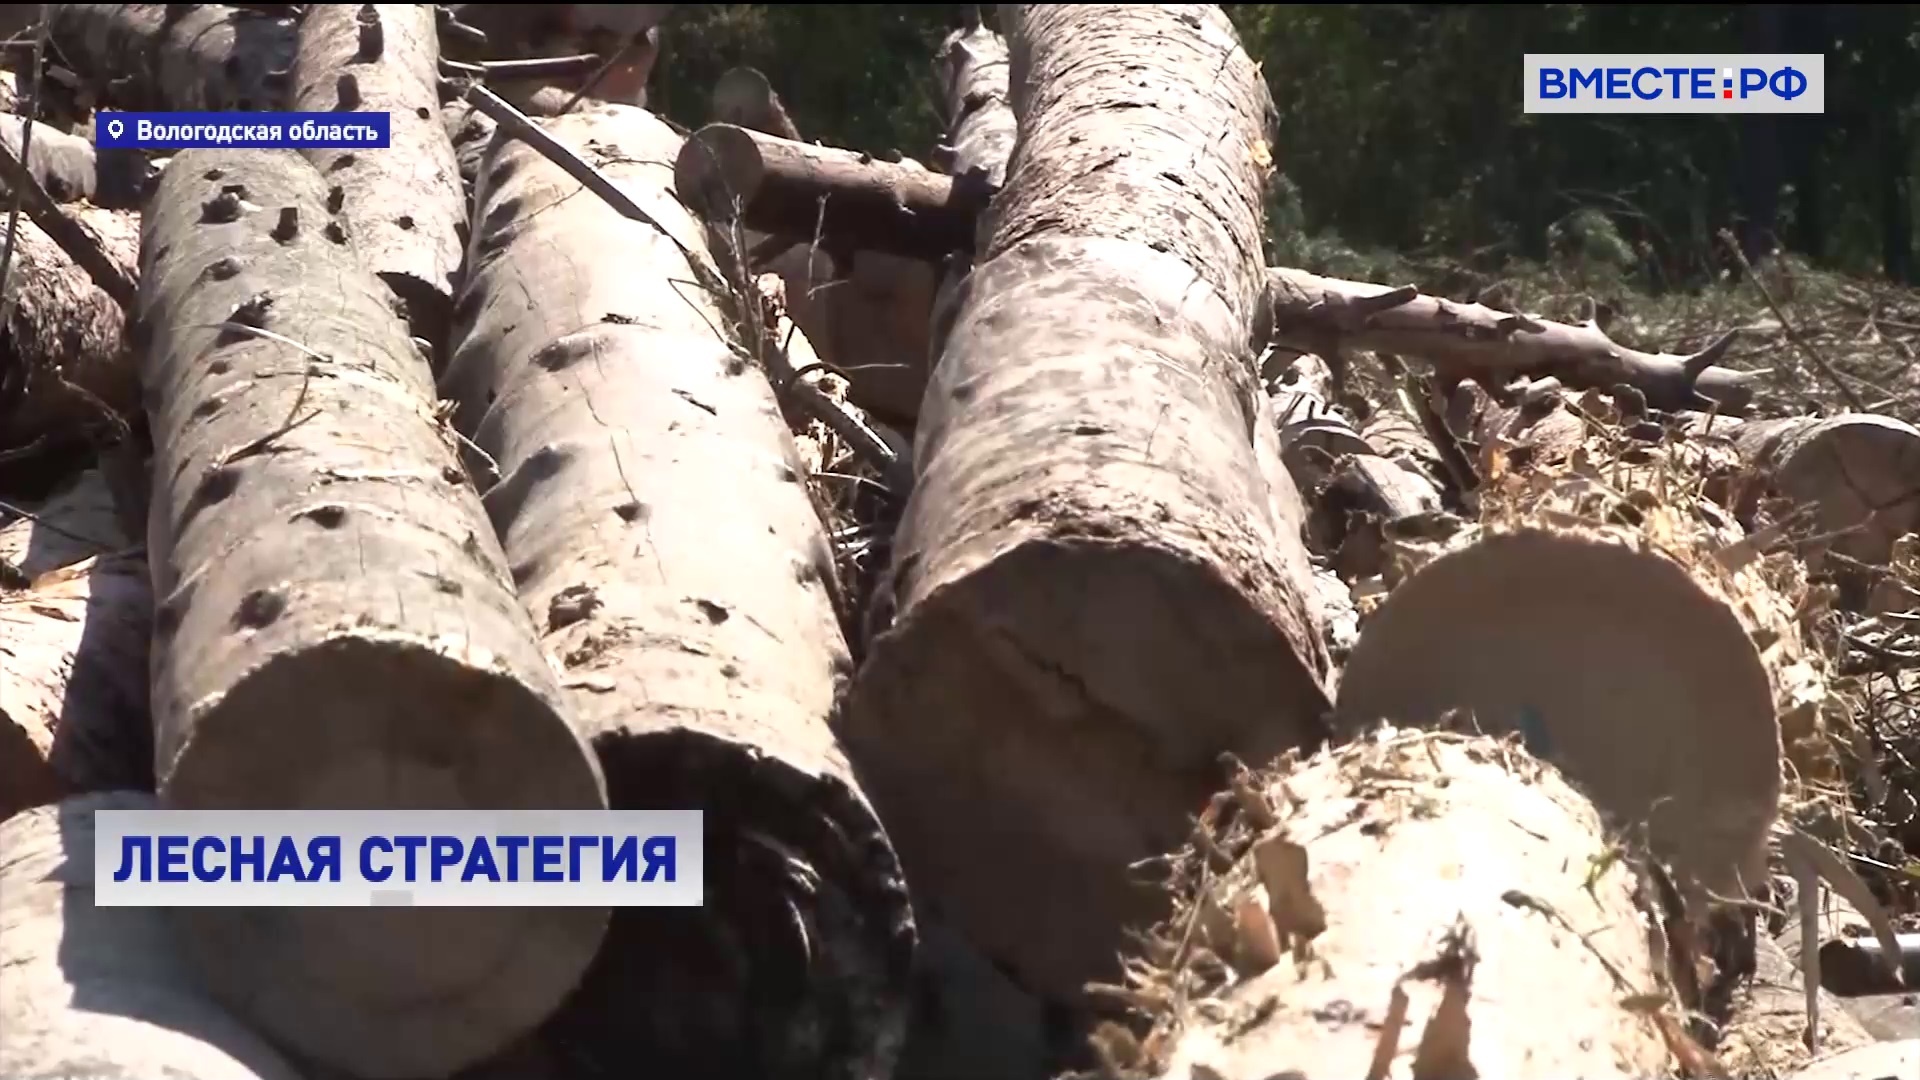 Регионам предлагают использовать опыт Вологодской области по глубокой переработке древесины 